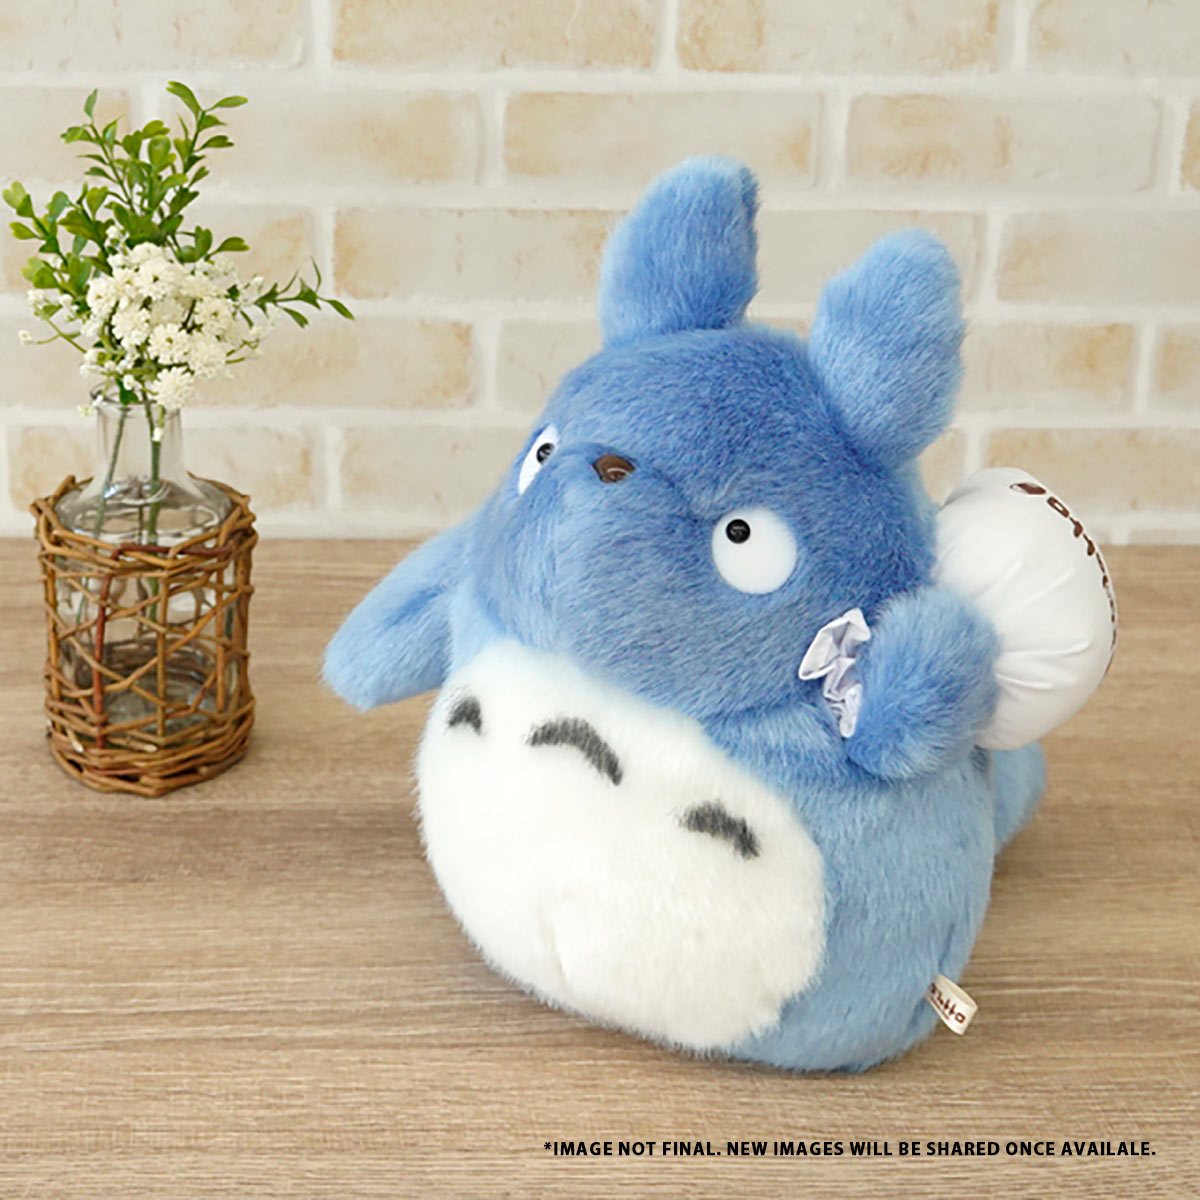 13 Grey Fluffy Big Totoro Plush My Neighbor Totoro, Sun Arrow Plush